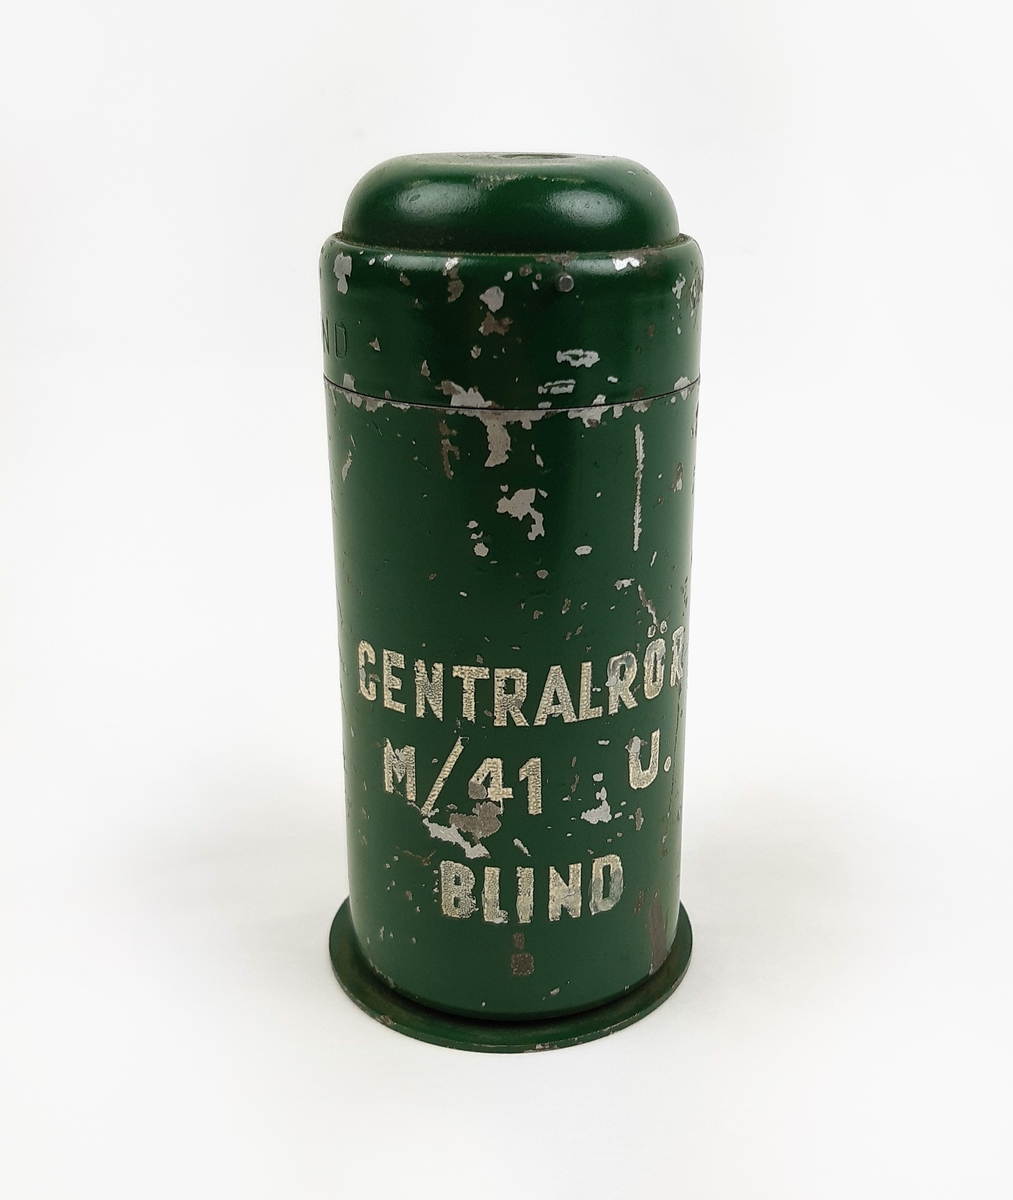 Centralrör m/41, blint. Bestående av en grön cylinder av metall. Märkt: CENTRALRÖR, M/41 U, BLIND.